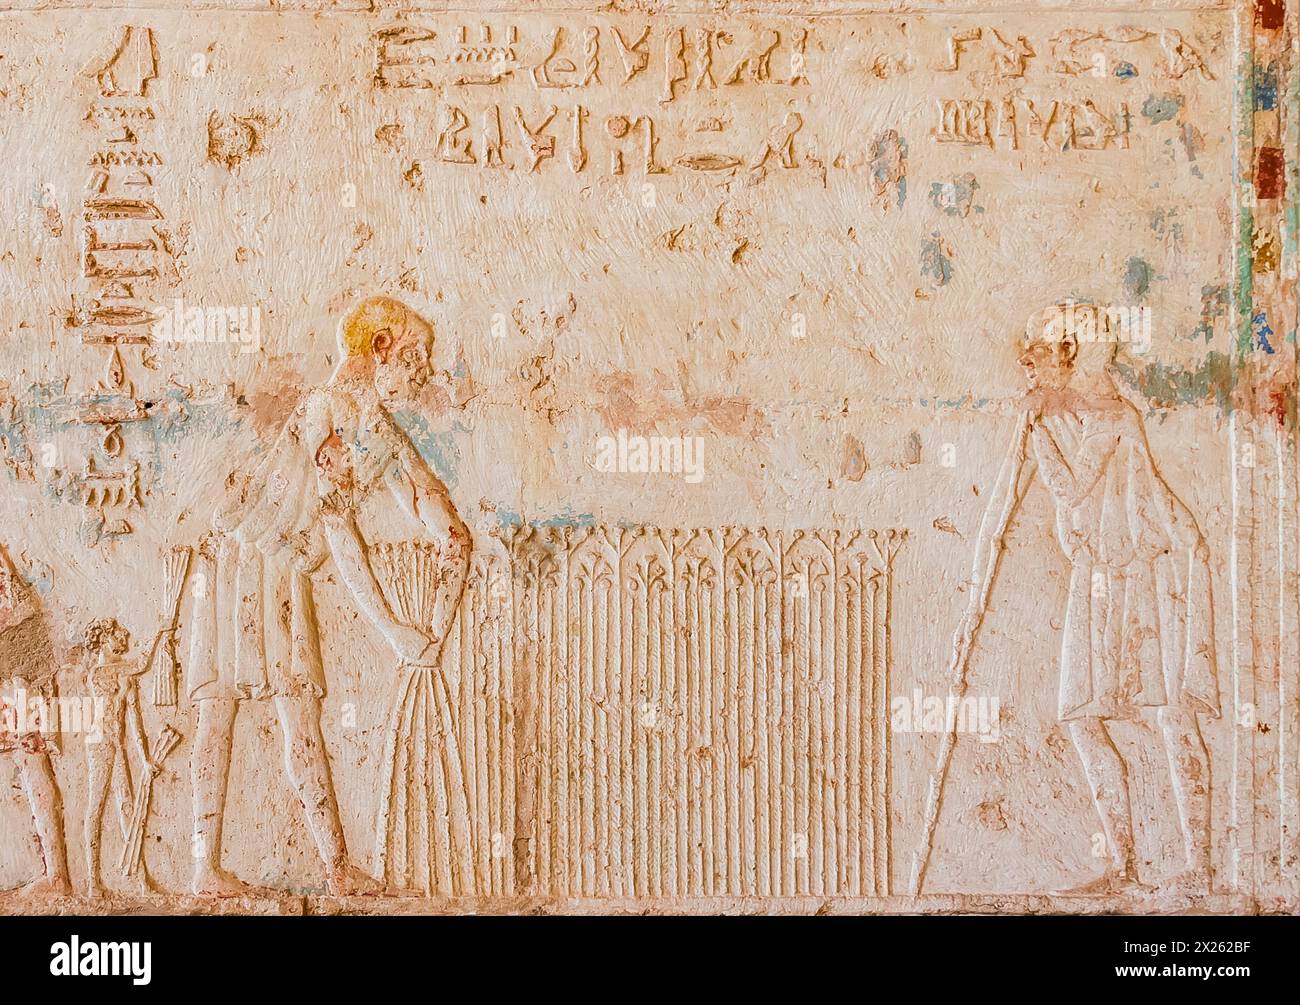 Égypte, thon el Gebel, tombeau de Petosiris, récolte de lin. Banque D'Images